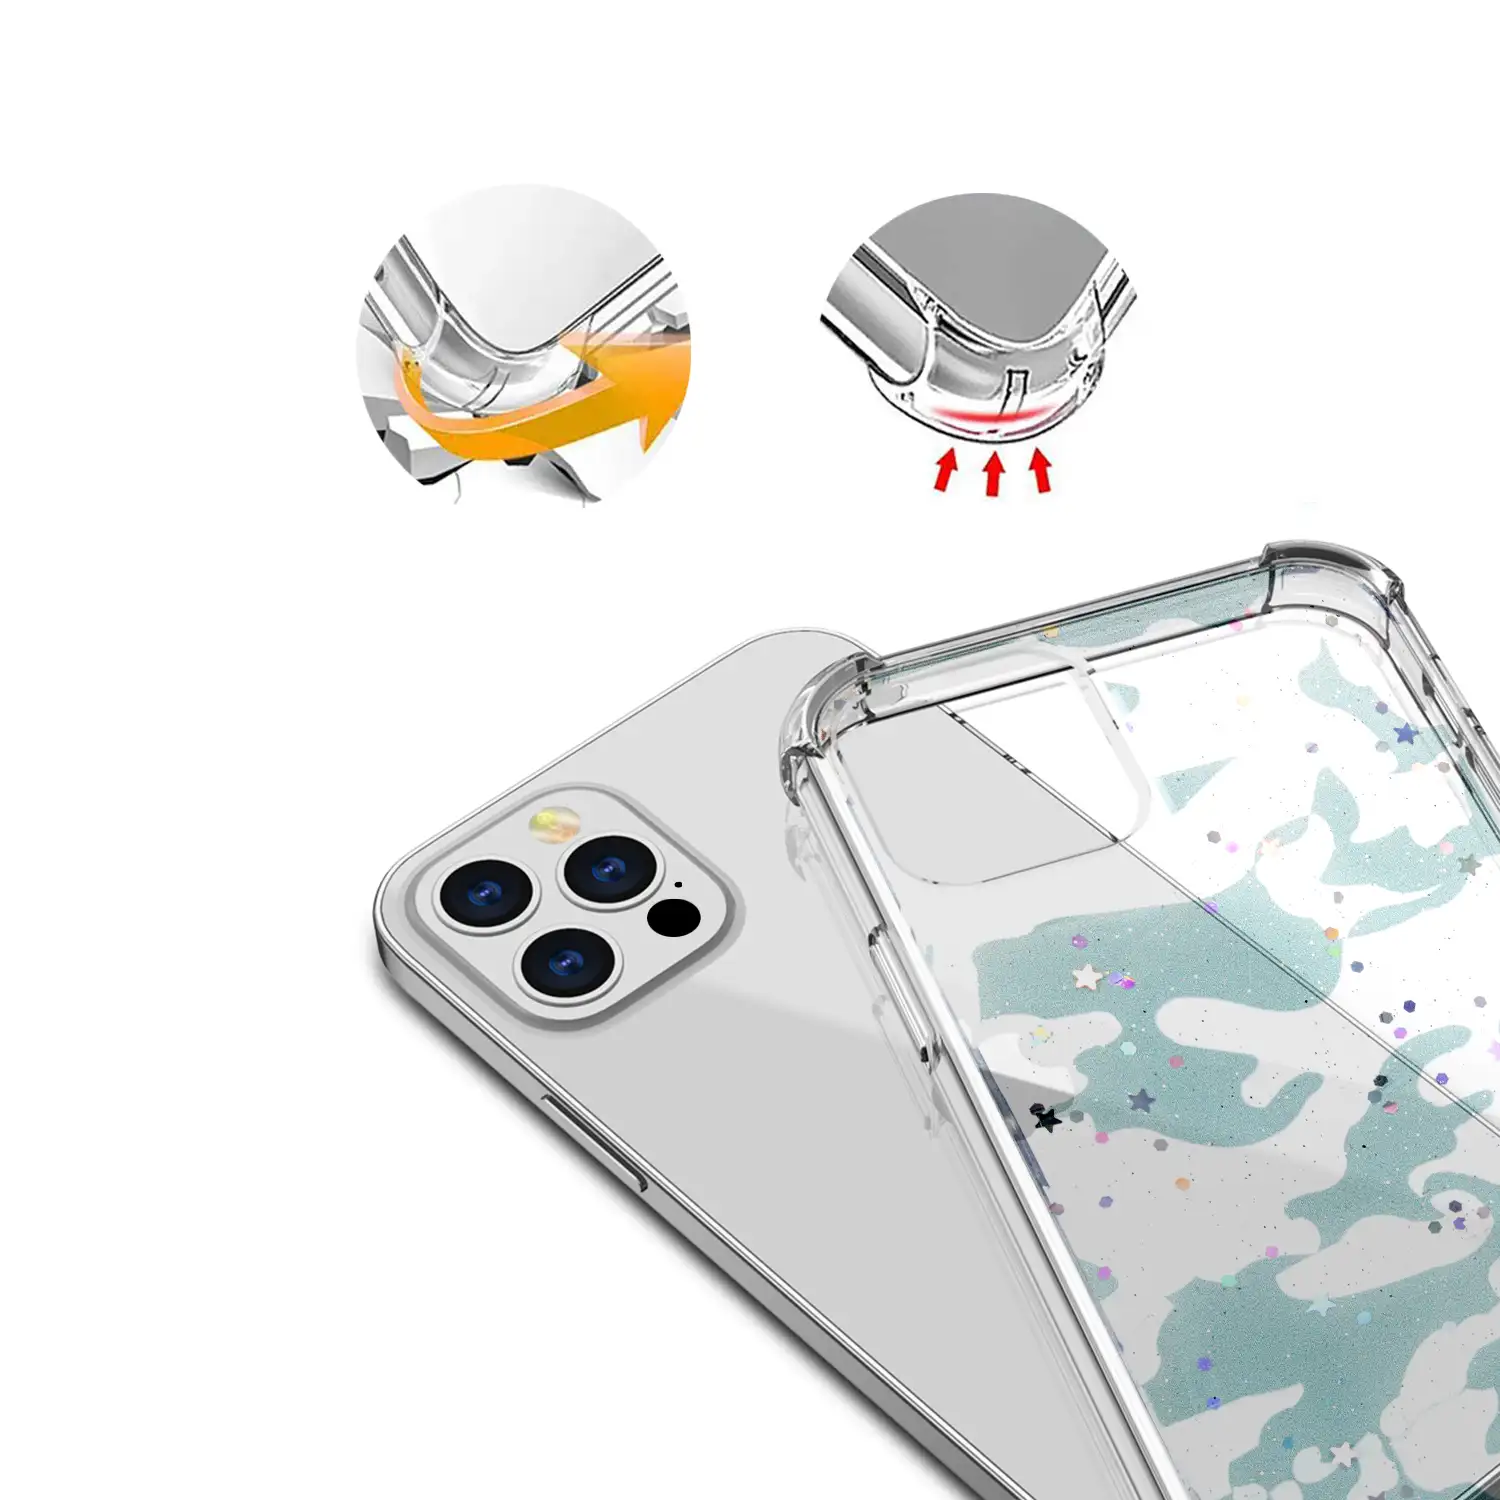 Carcasa de TPU de alta protección con diseño camuflaje urbano para iPhone 12 Pro Max